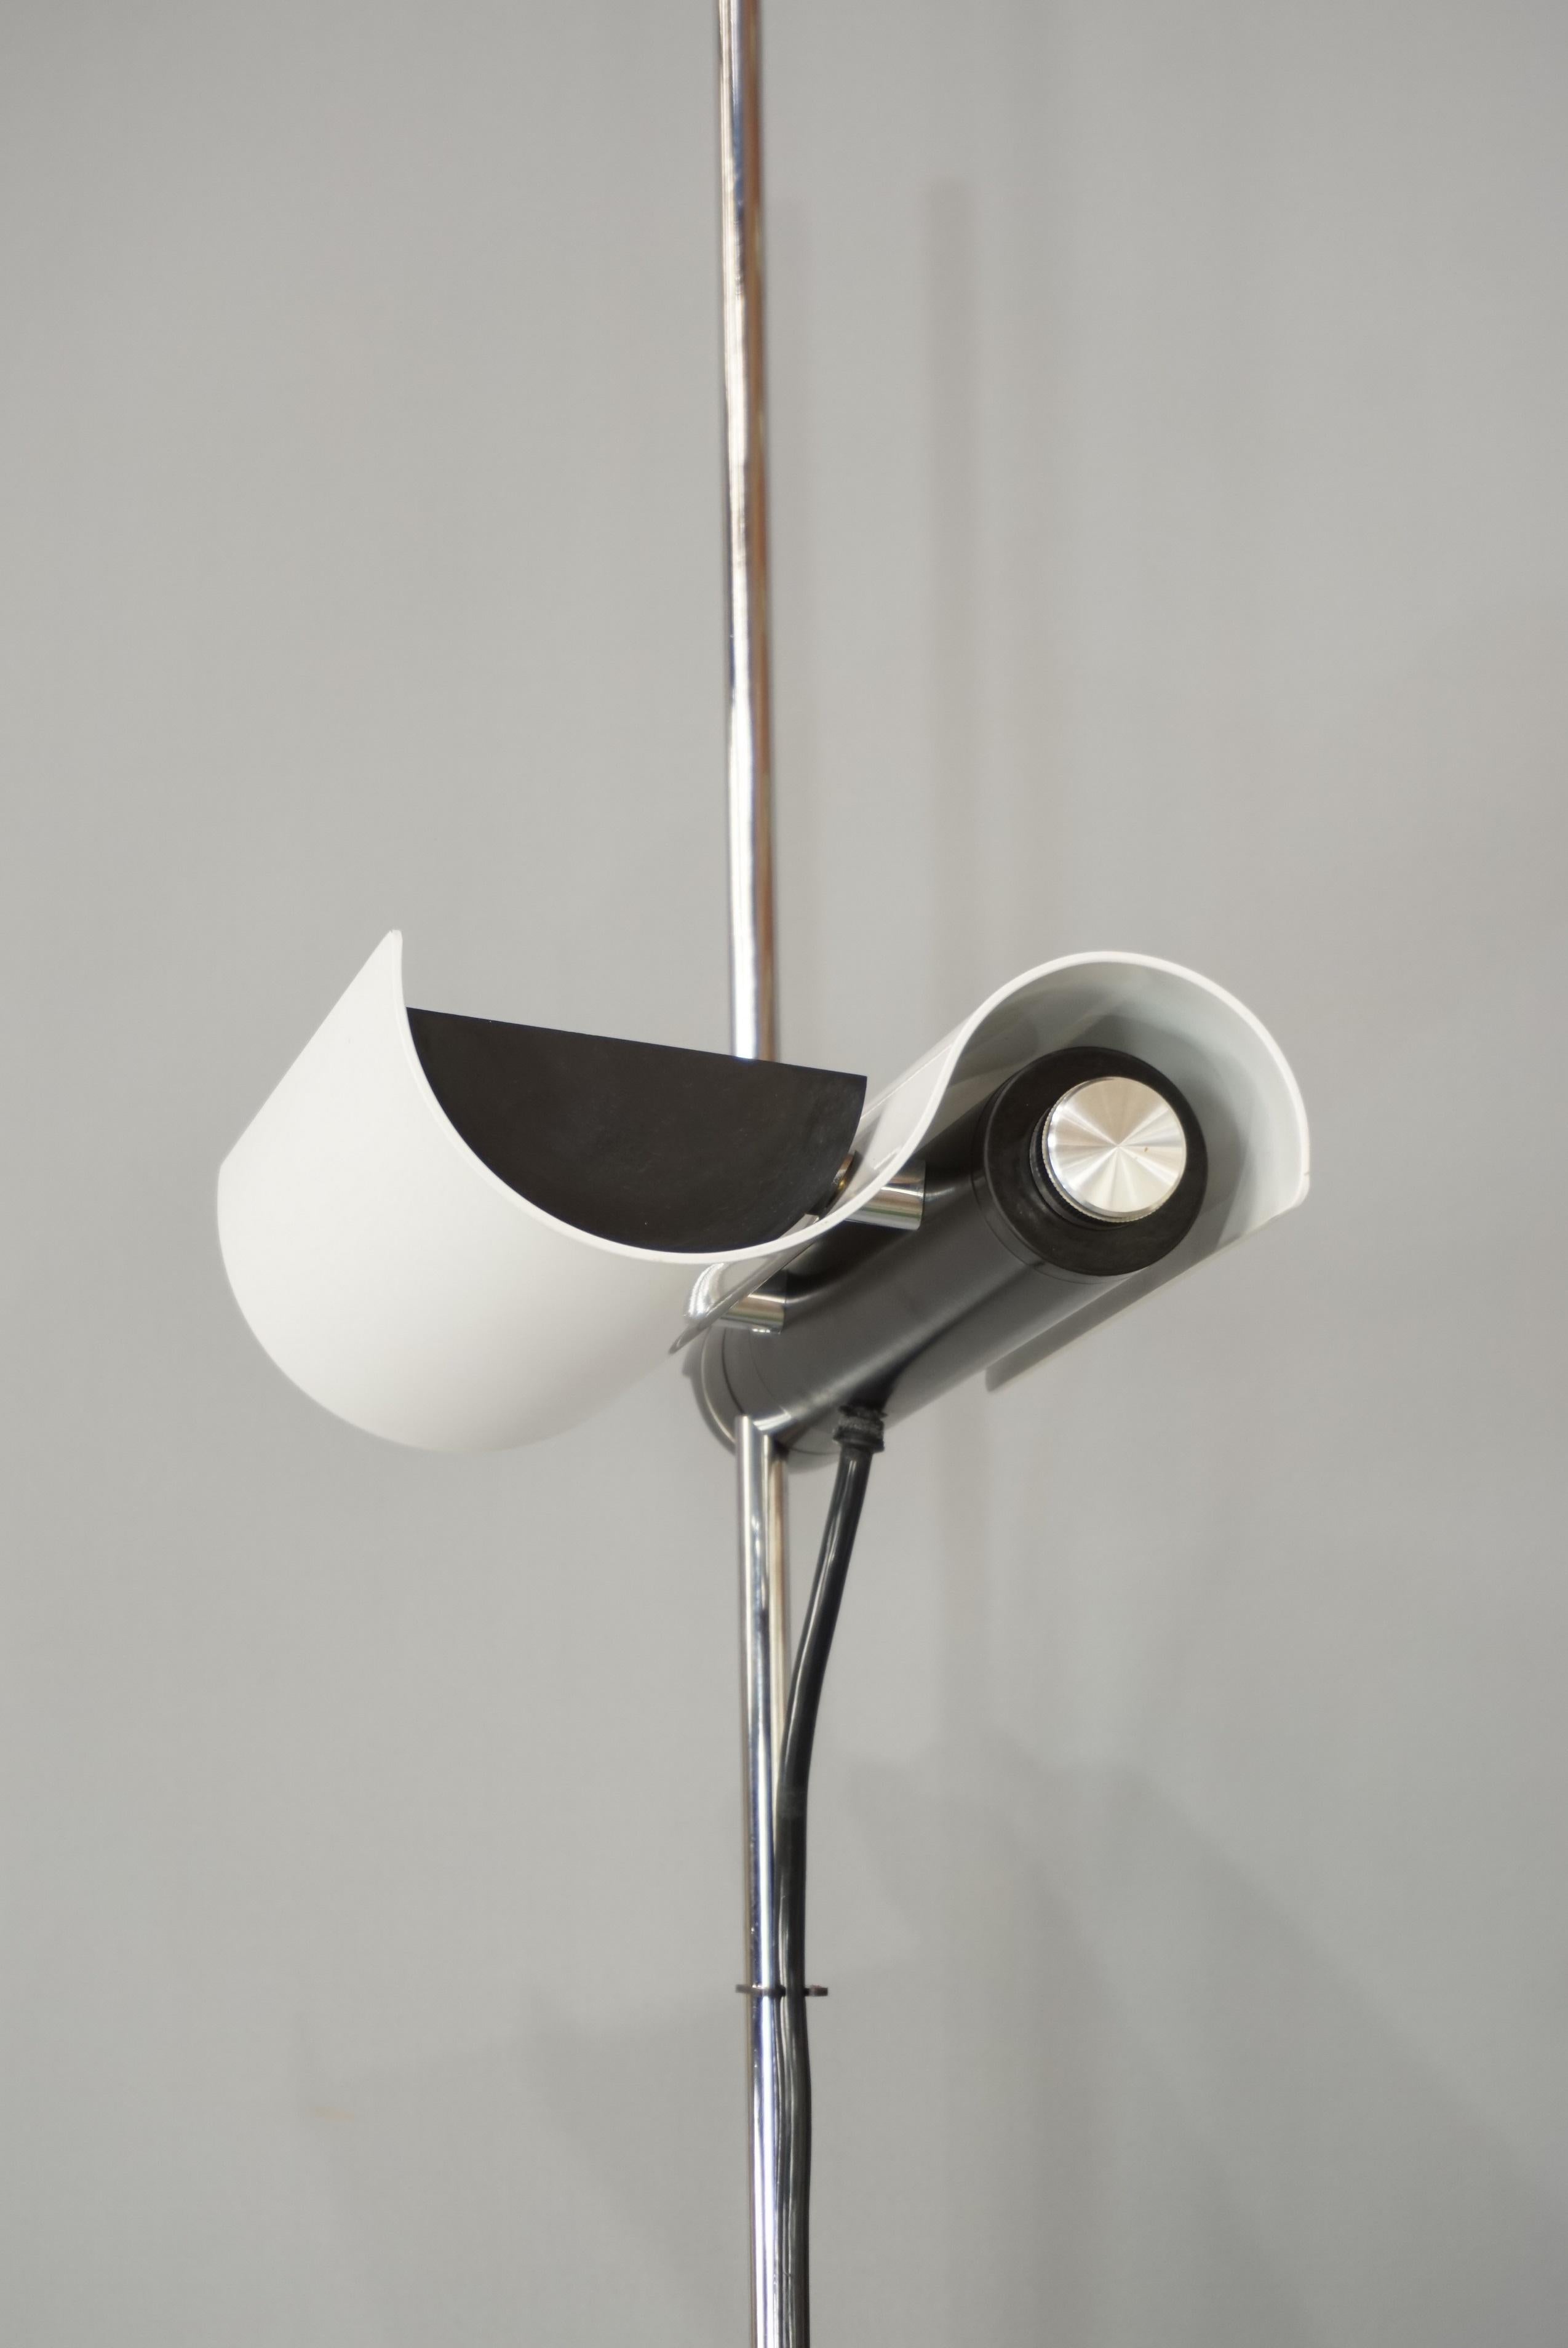 Vico Magistretti's DIM 333 White Floor Lamp Design from the 1970s  7